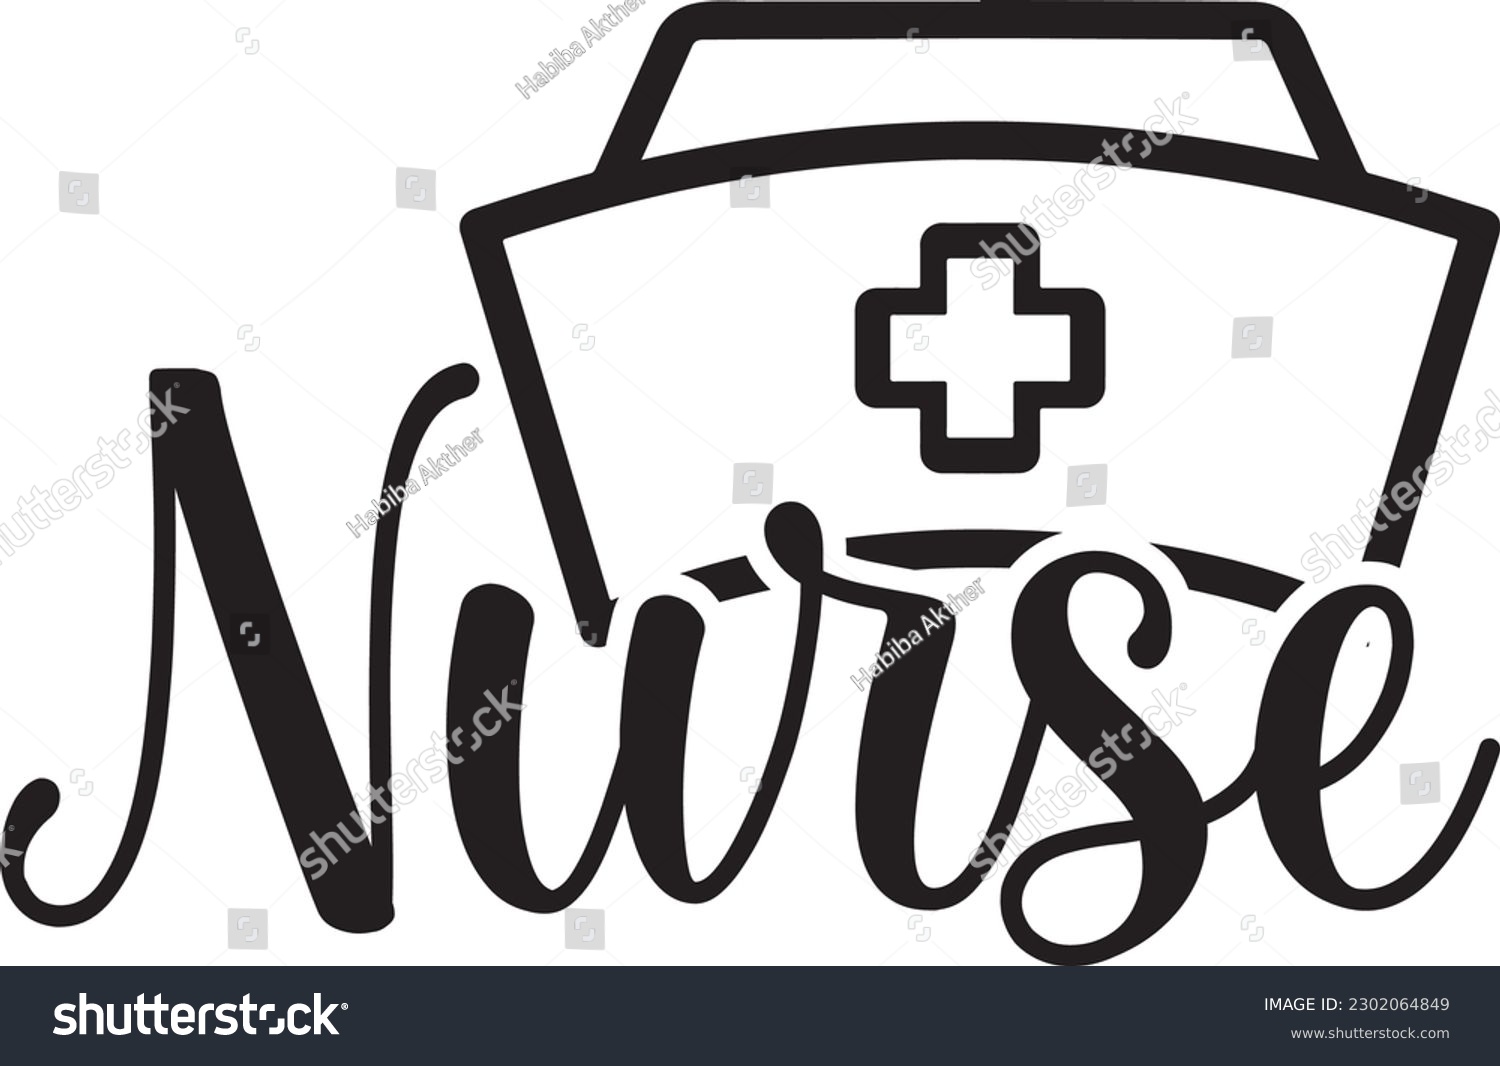 SVG of Nurse,Doctor's Day,#1 doctor,Doctor Svg,silhouette,Vector,Nurse SVG,Essential Worker,Hospital,Heart Stethoscope SVG,dentist svg,monogram svg,medical,Eps,uniform svg,Doctor Jacket svg,Doctor mug,Coffee svg